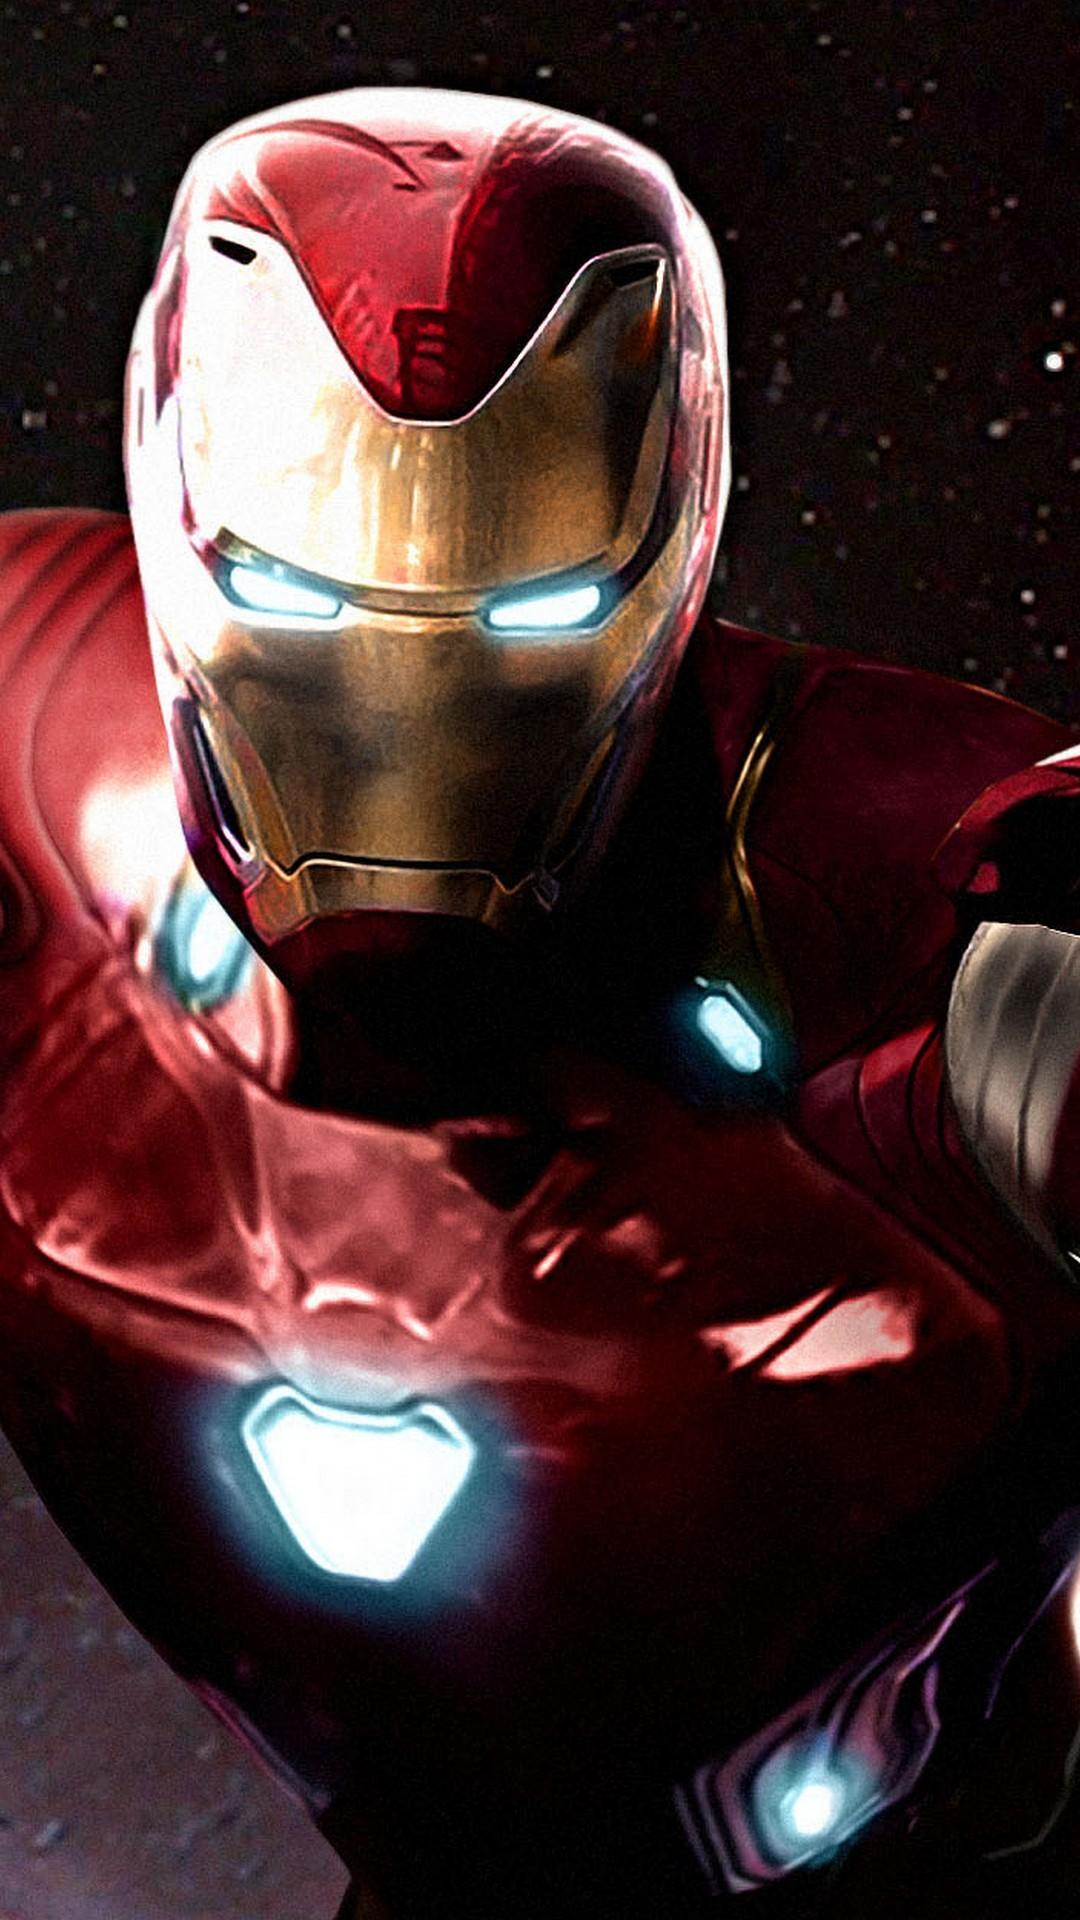 Iron Man Avengers Infinity War iPhone Wallpaper 3D iPhone Wallpaper